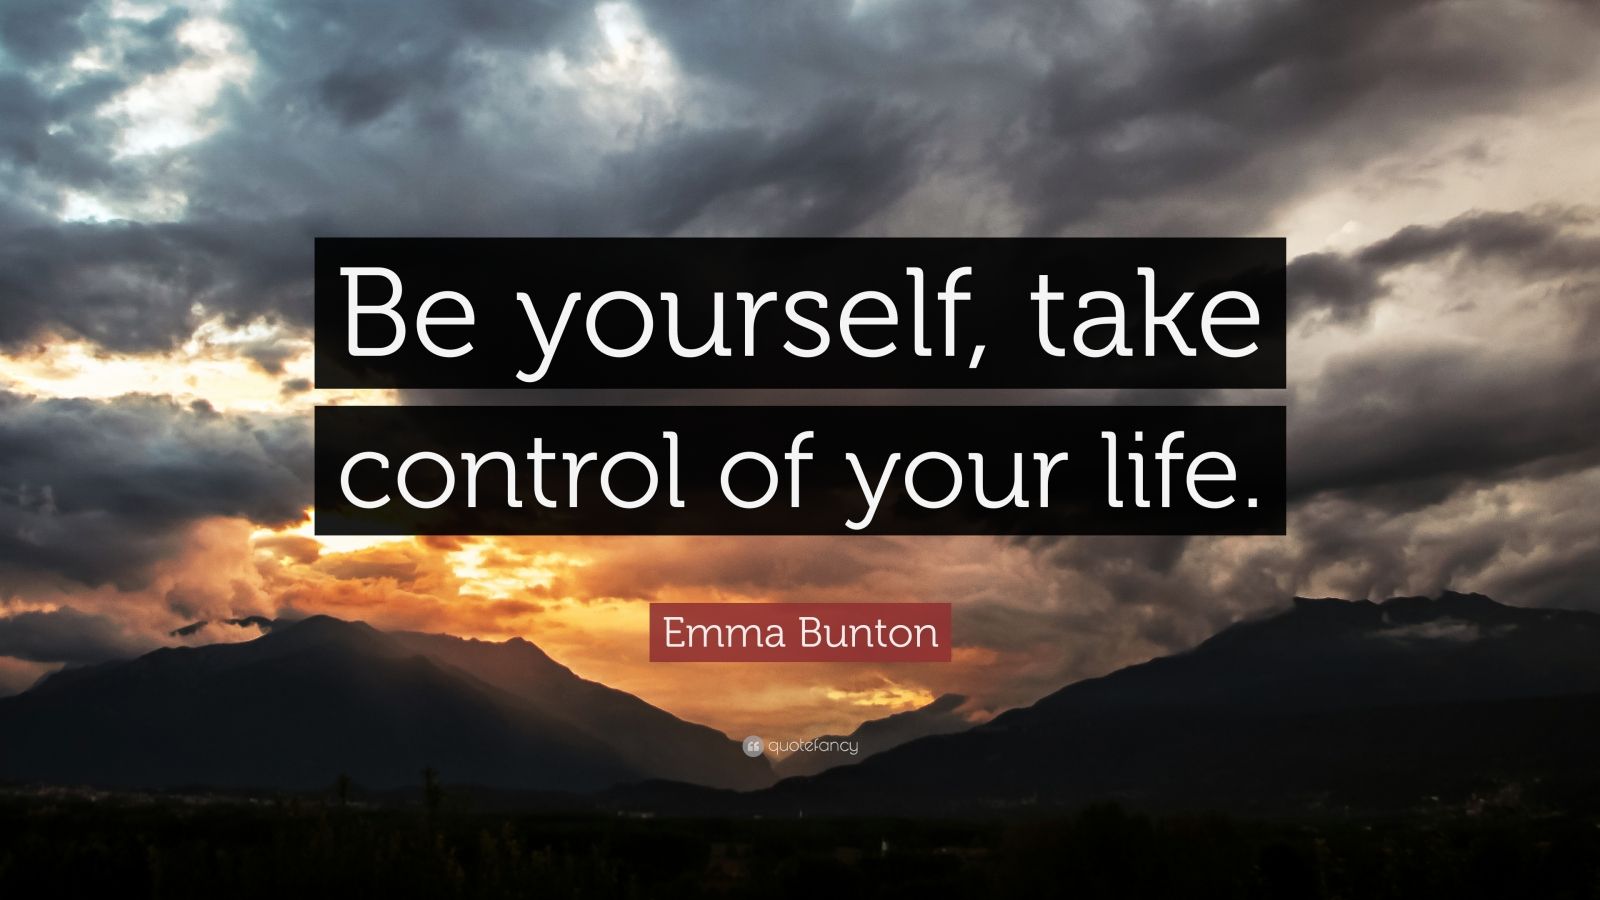 Top 20 Emma Bunton Quotes (2022 Update) - Quotefancy